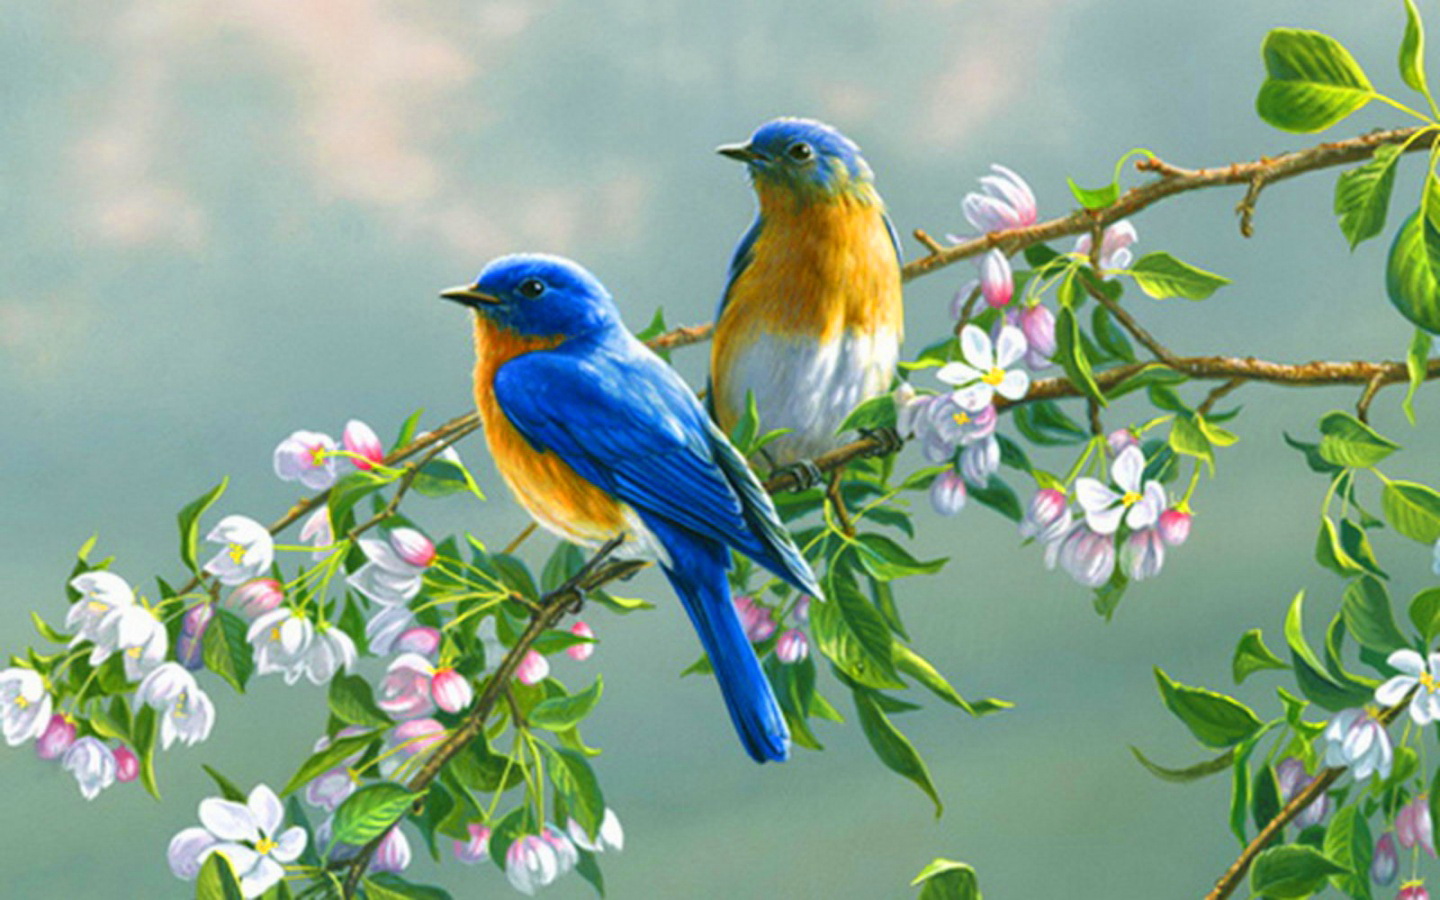 Cute birds on spring branch wallpaper   ForWallpapercom